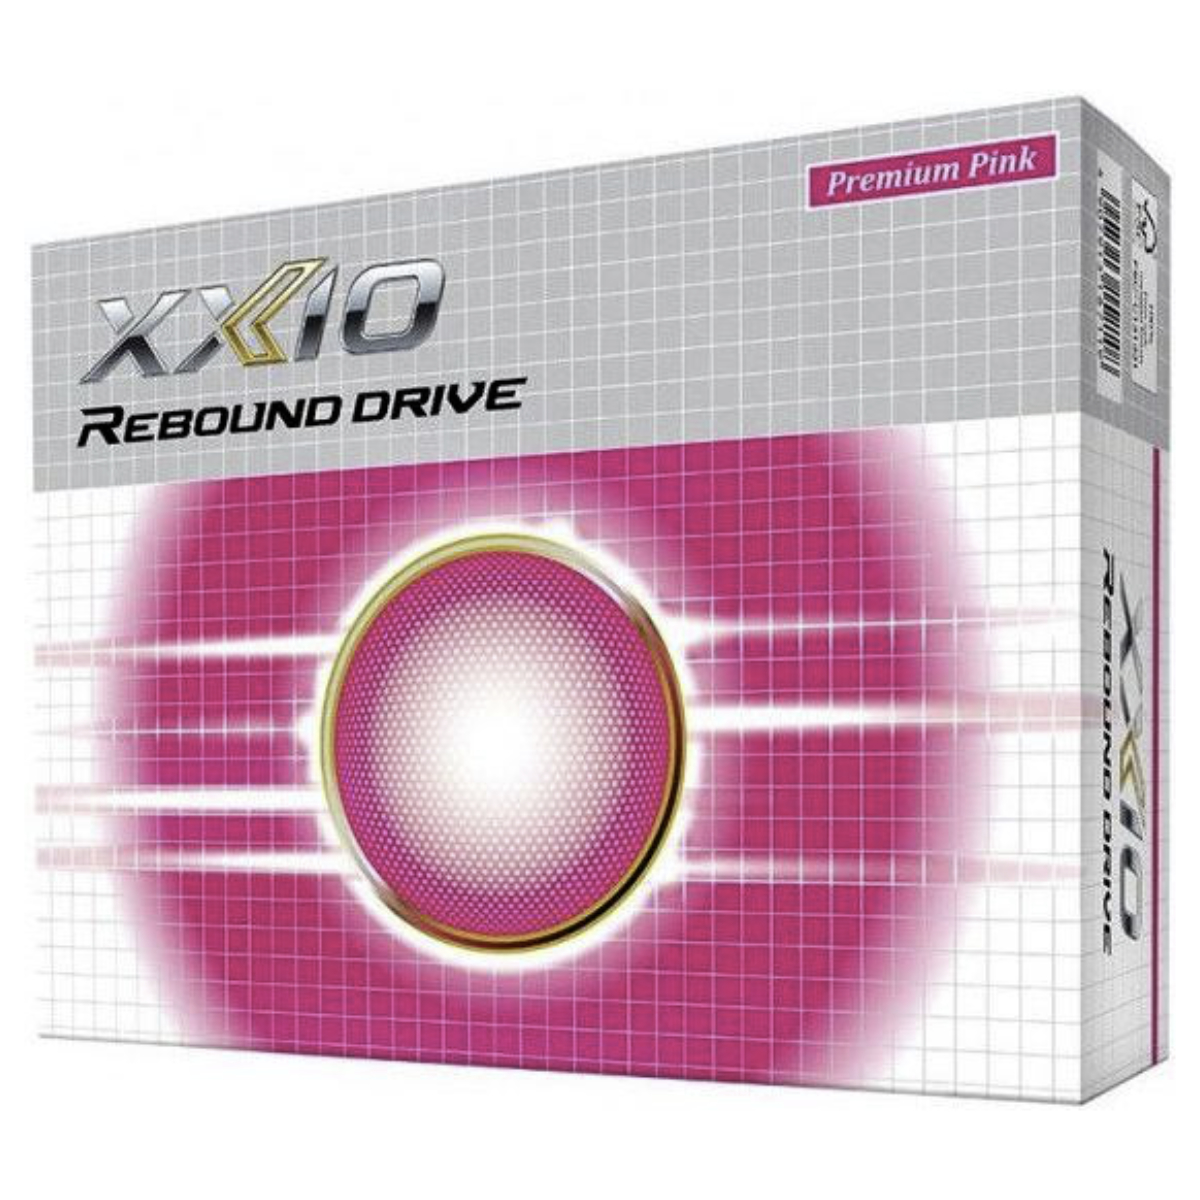 XXIO Rebound Drive Premium Pink